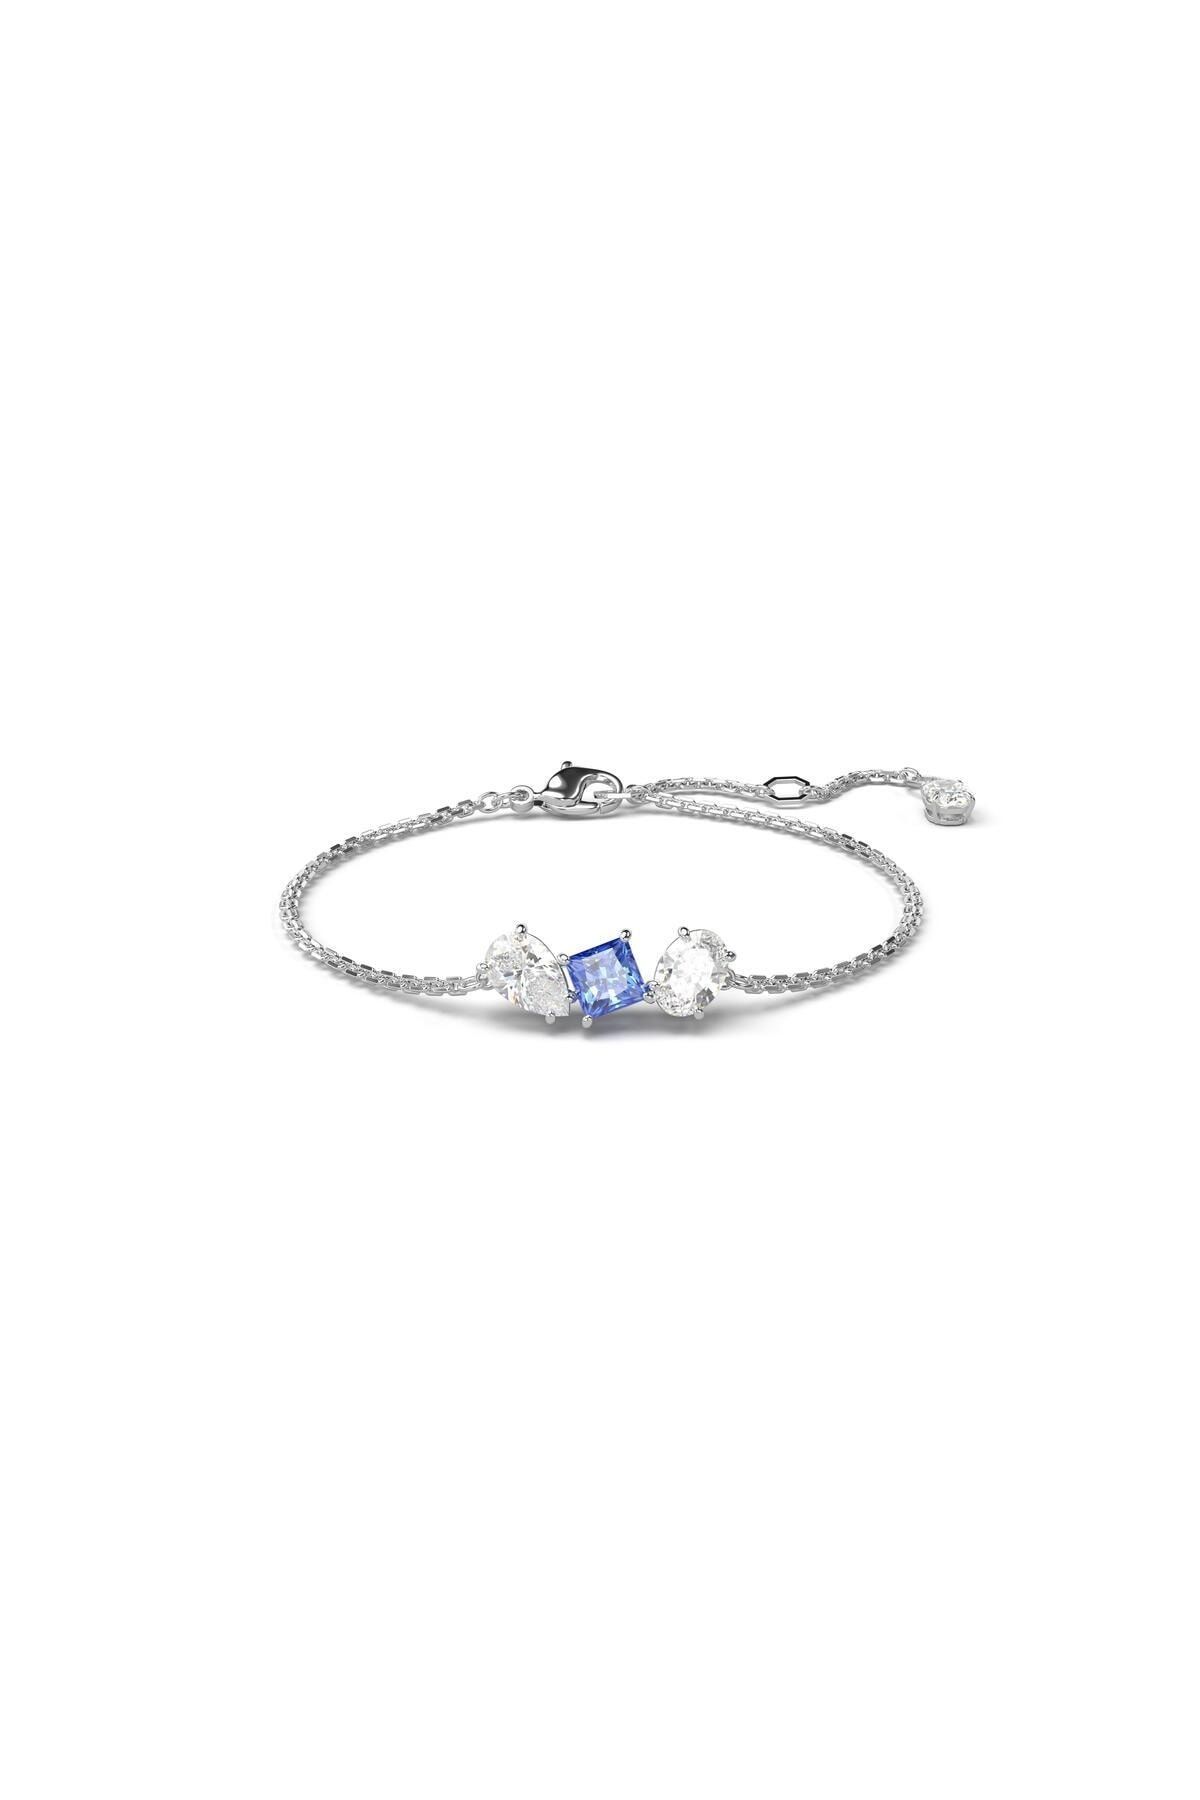 Swarovski 5668359 Swarovski Bilezik Mesmera:Bracelet Blue White/Rhs M